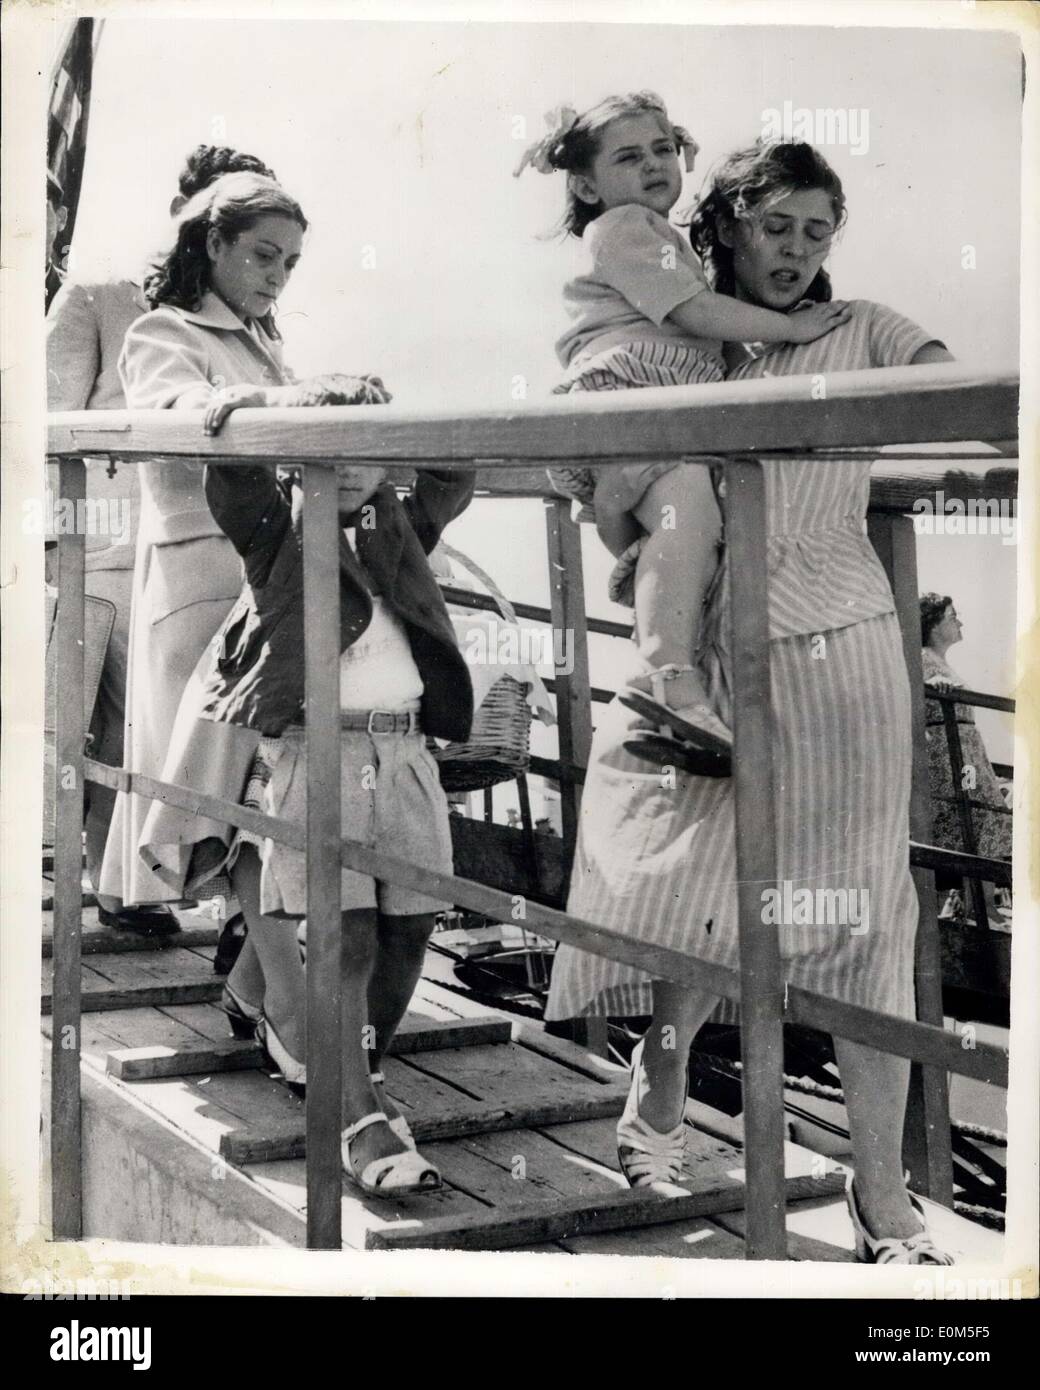 14 agosto 1953 - Il greco terremoto. La foto mostra: triste di fronte madri greche, uno che porta il suo bambino, andare a bordo di un esercito nave da trasporto per evacuazione alla terraferma. Foto Stock